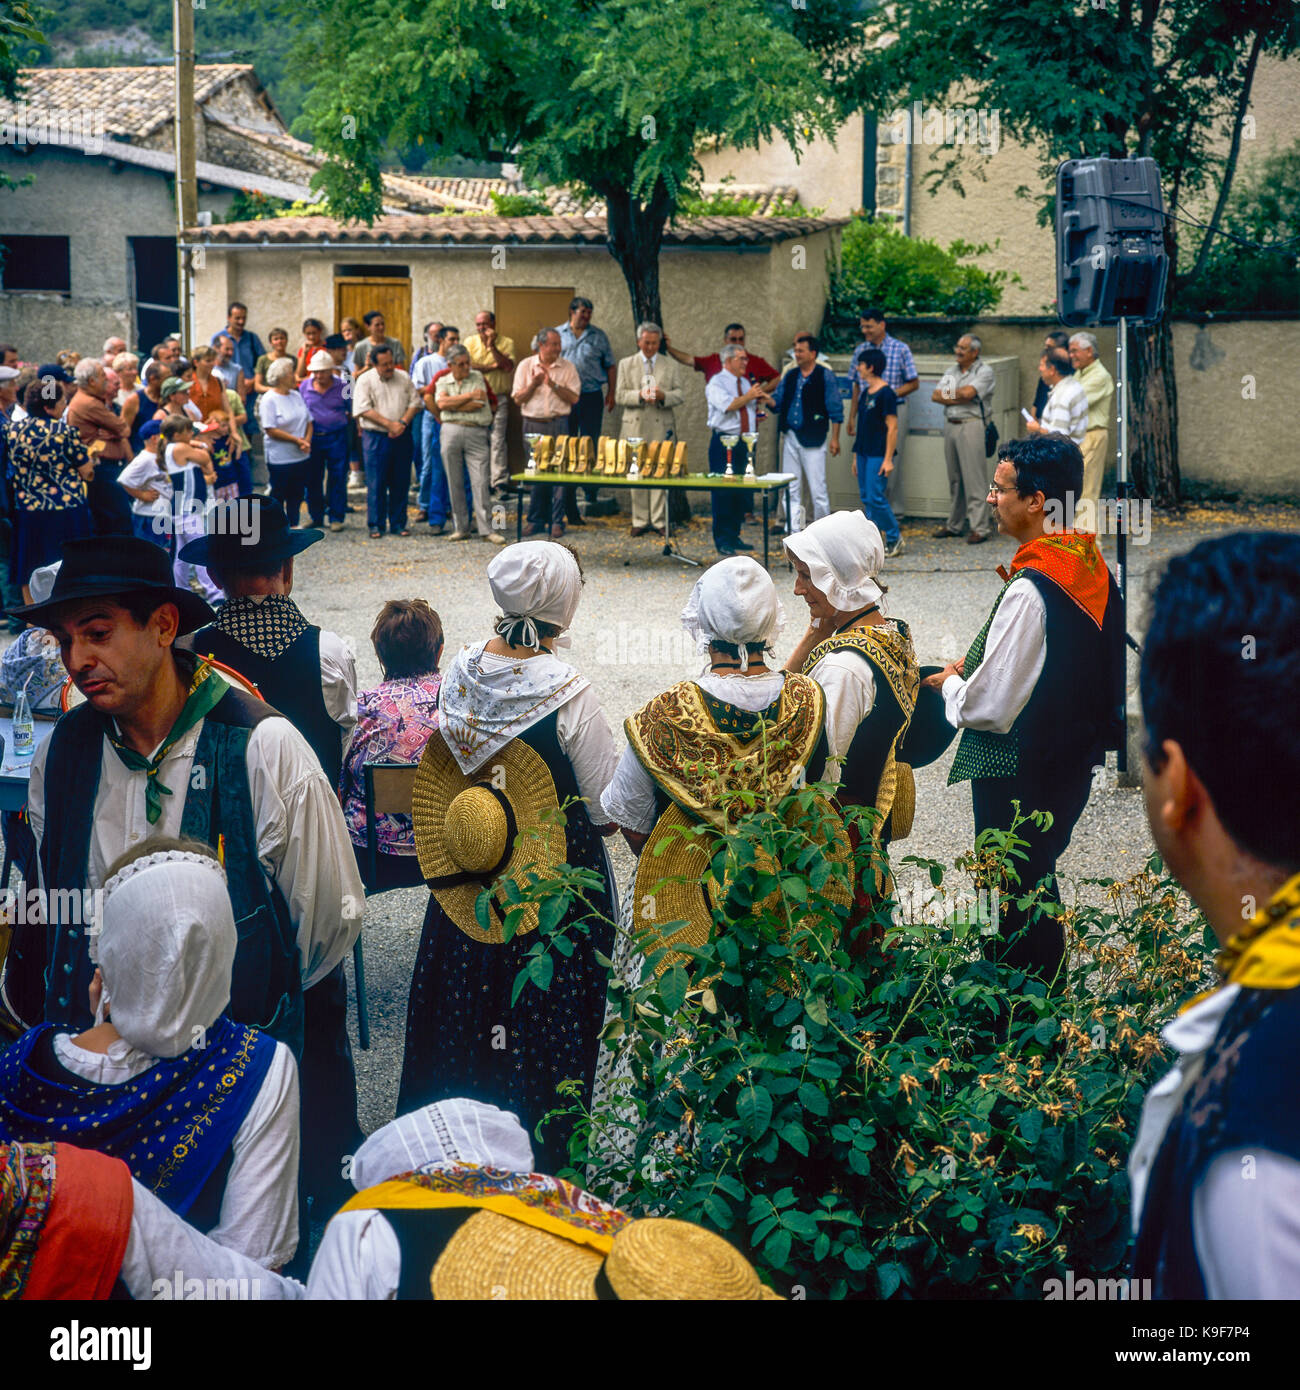 Groupe folklorique et visiteurs, cérémonie de remise des prix, marché annuel du bétail et foire du village, Montfroc, Drôme, Provence, France, Europe Banque D'Images